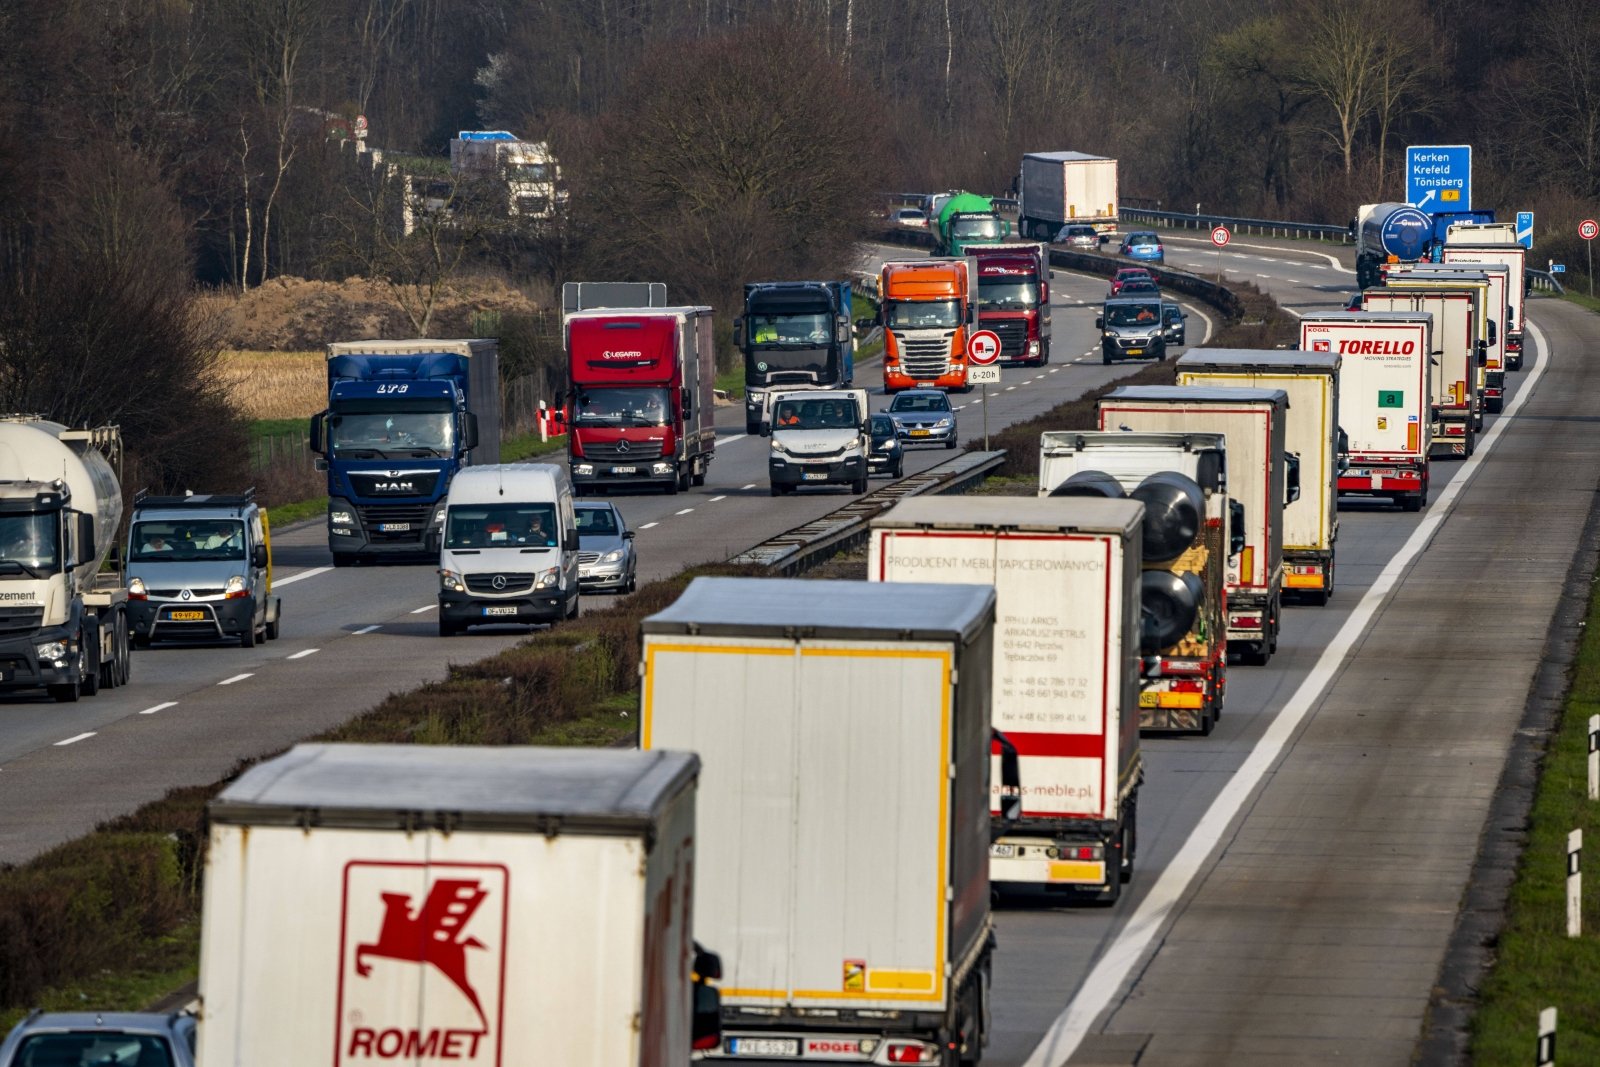 Wkrótce w Polsce zacznie obowiązywać nowy system opłat drogowych, ale litewscy przewoźnicy są niezadowoleni: nie wiadomo, jak będzie działać